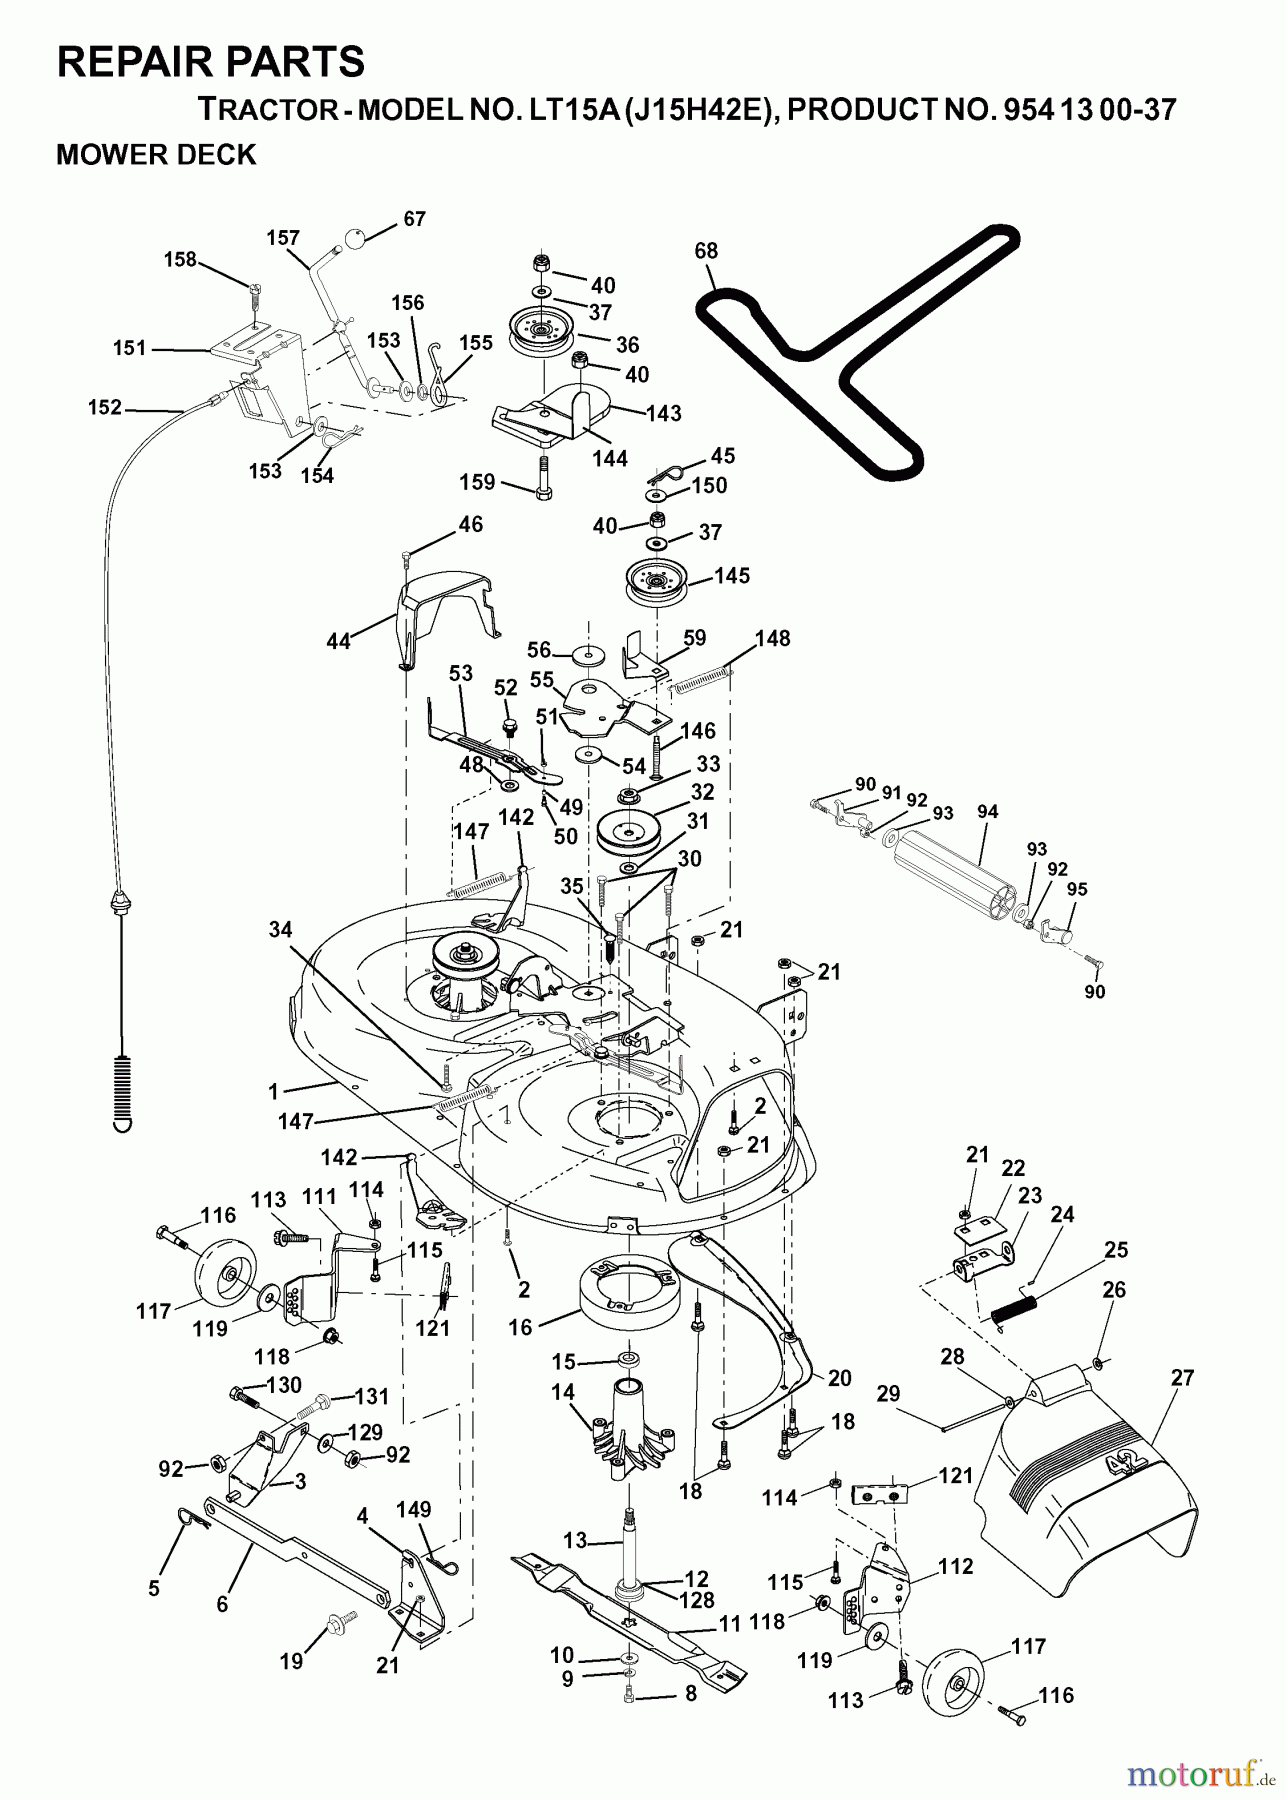  Jonsered Rasen  und Garten Traktoren LT15A (J15H42E, 954130037) - Jonsered Lawn & Garden Tractor (2000-02) MOWER DECK / CUTTING DECK